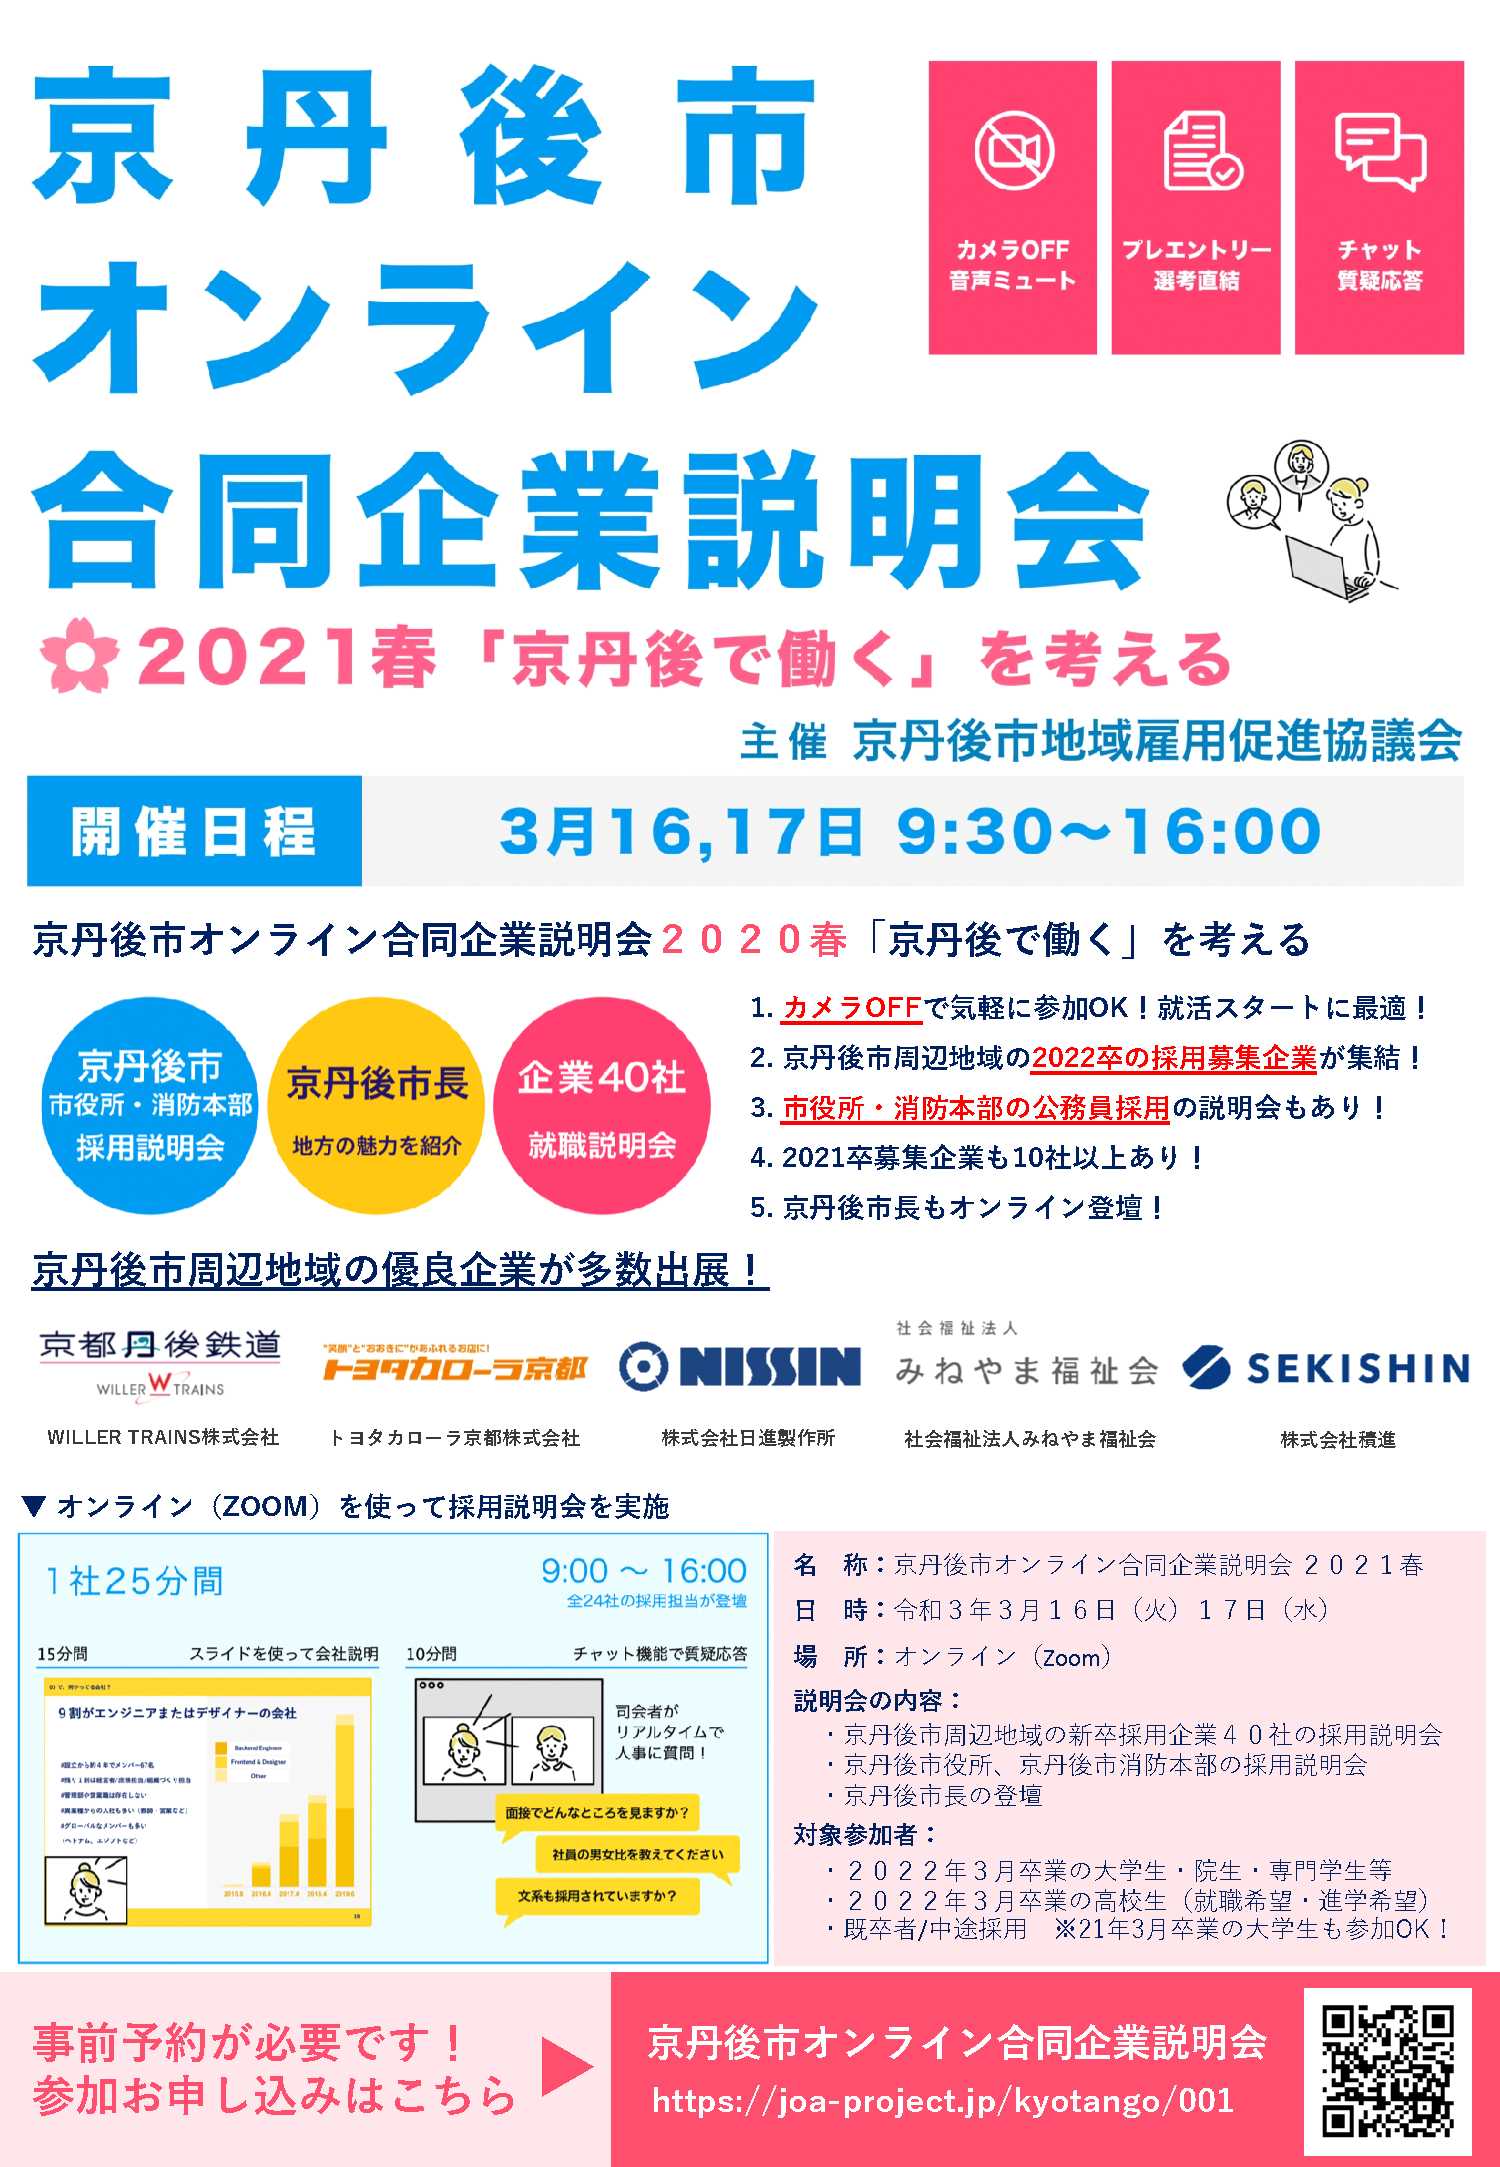 【採用関連】京丹後市オンライン合同企業説明会 2021春「京丹後で働く」を考える